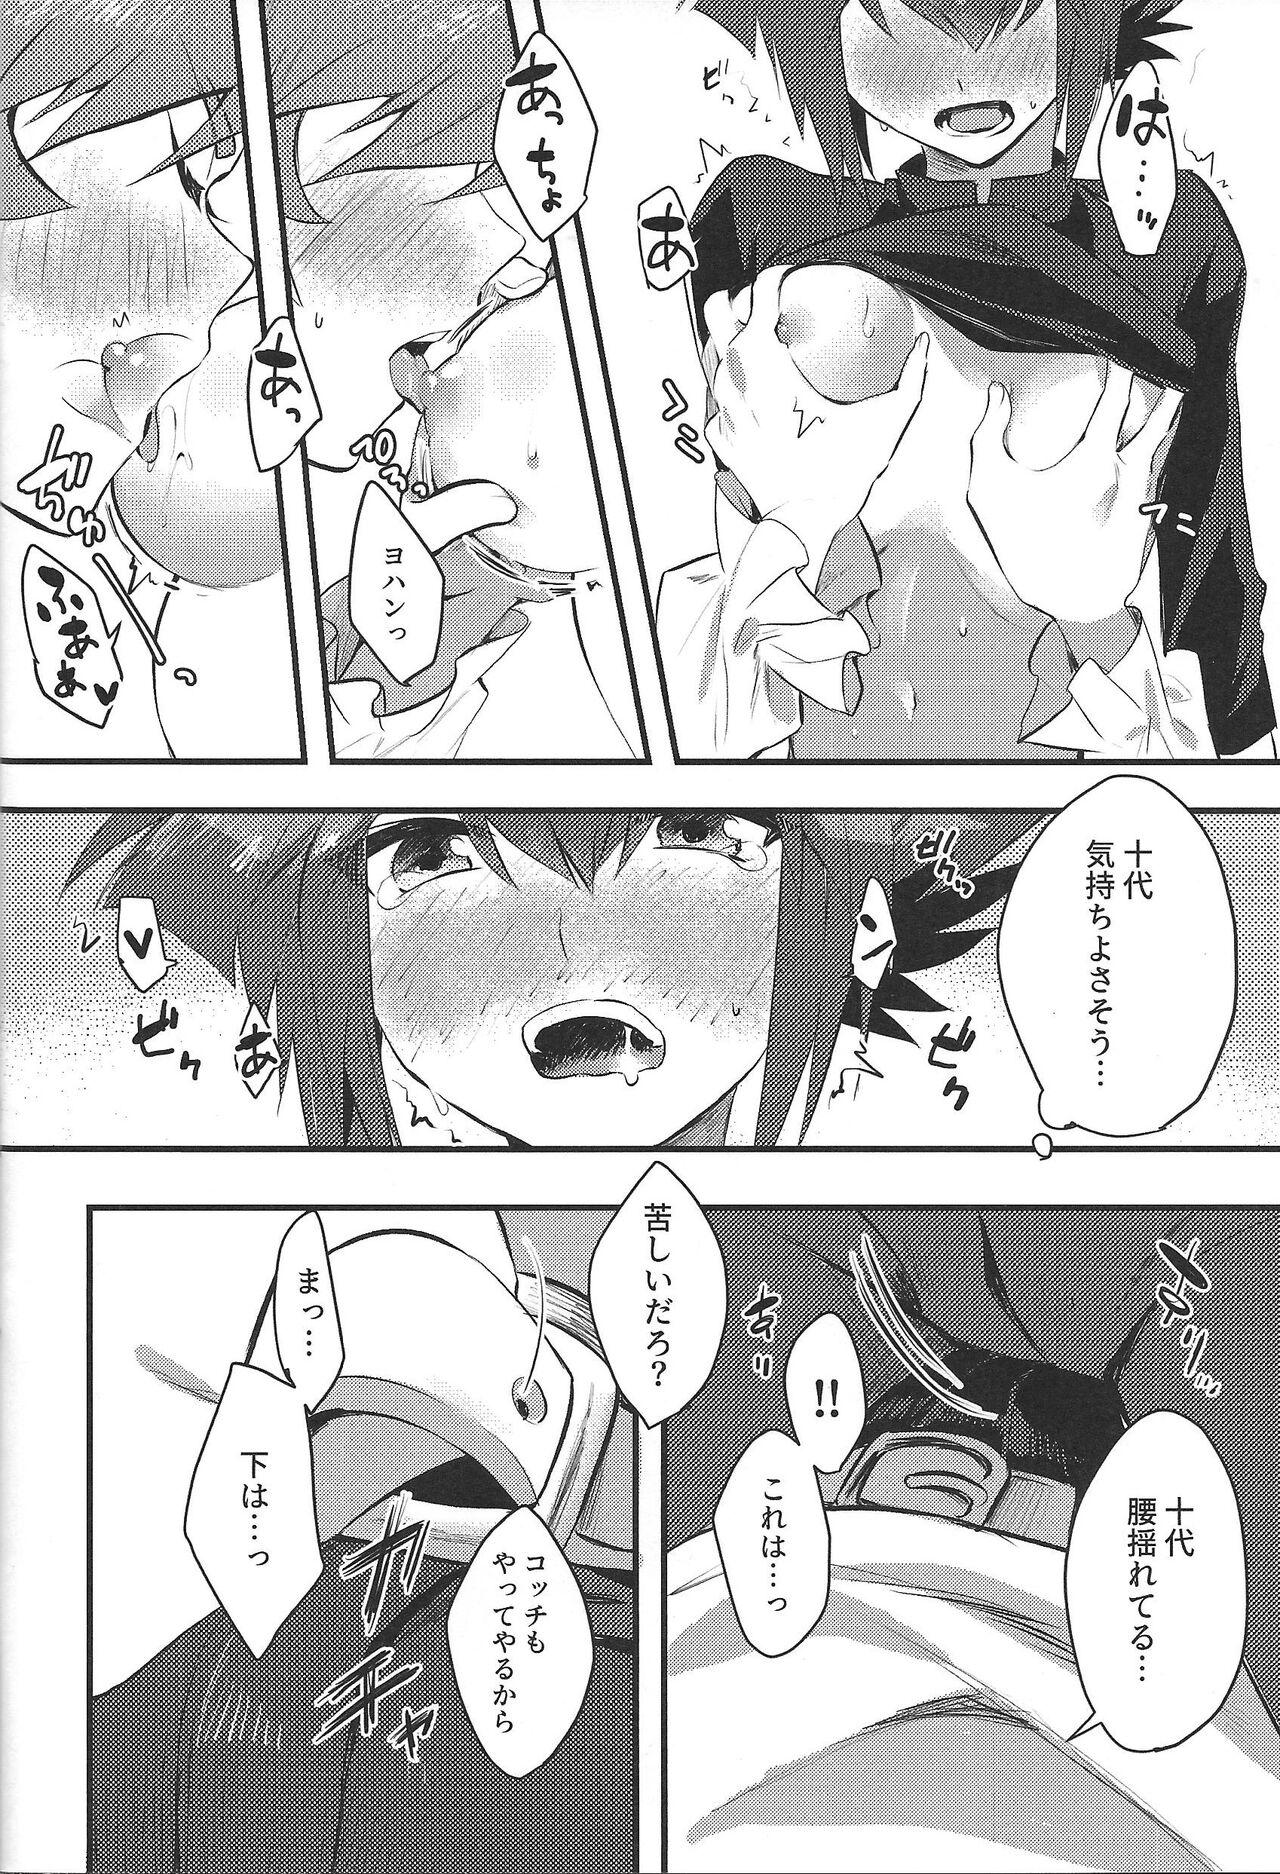 Whore Reberu 12 no akuma to yugo shite nani mo nai wake ga nai - Yu gi oh gx Kissing - Page 11